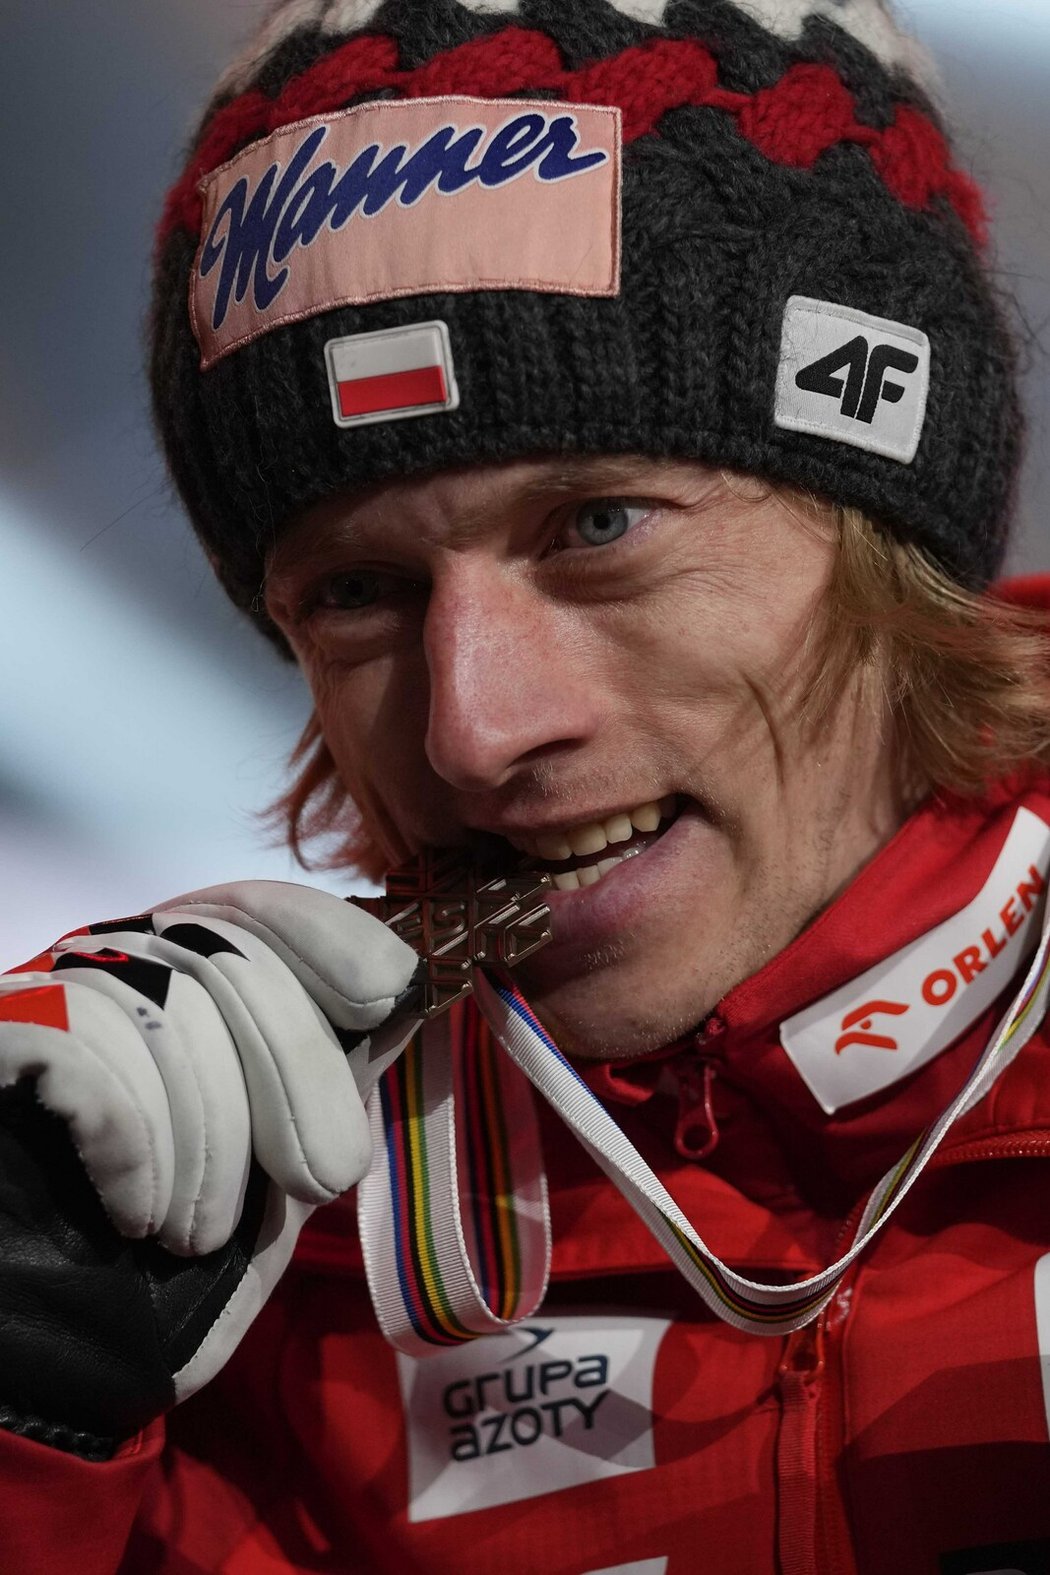 Držitel devíti medailí z olympijských her a světových pohárů Dawid Kubacki upřednostnil rodinu před úspěchem ve skocích na lyžích